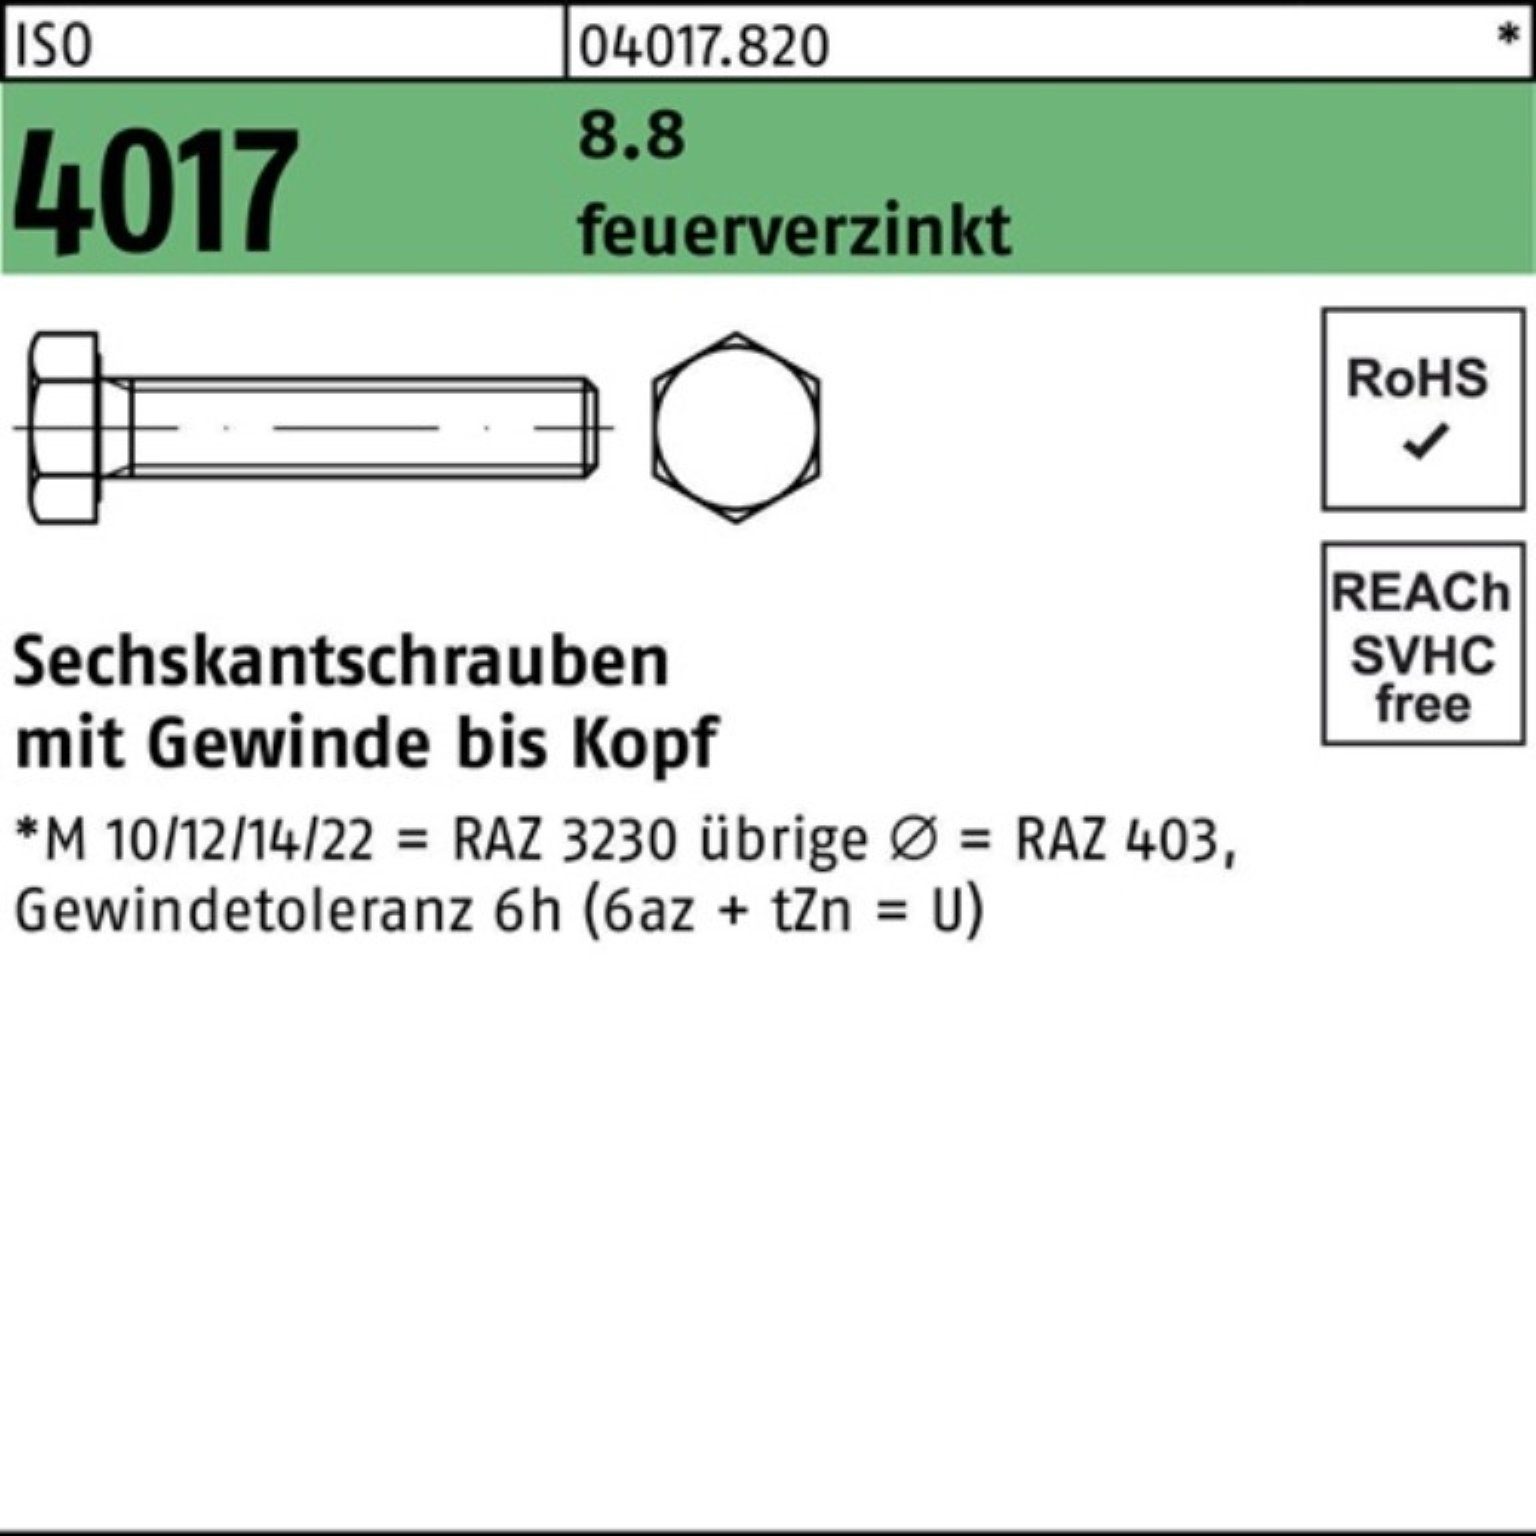 Bufab Sechskantschraube 8.8 M20x 100er St VG 4017 Sechskantschraube Pack 60 25 ISO feuerverz